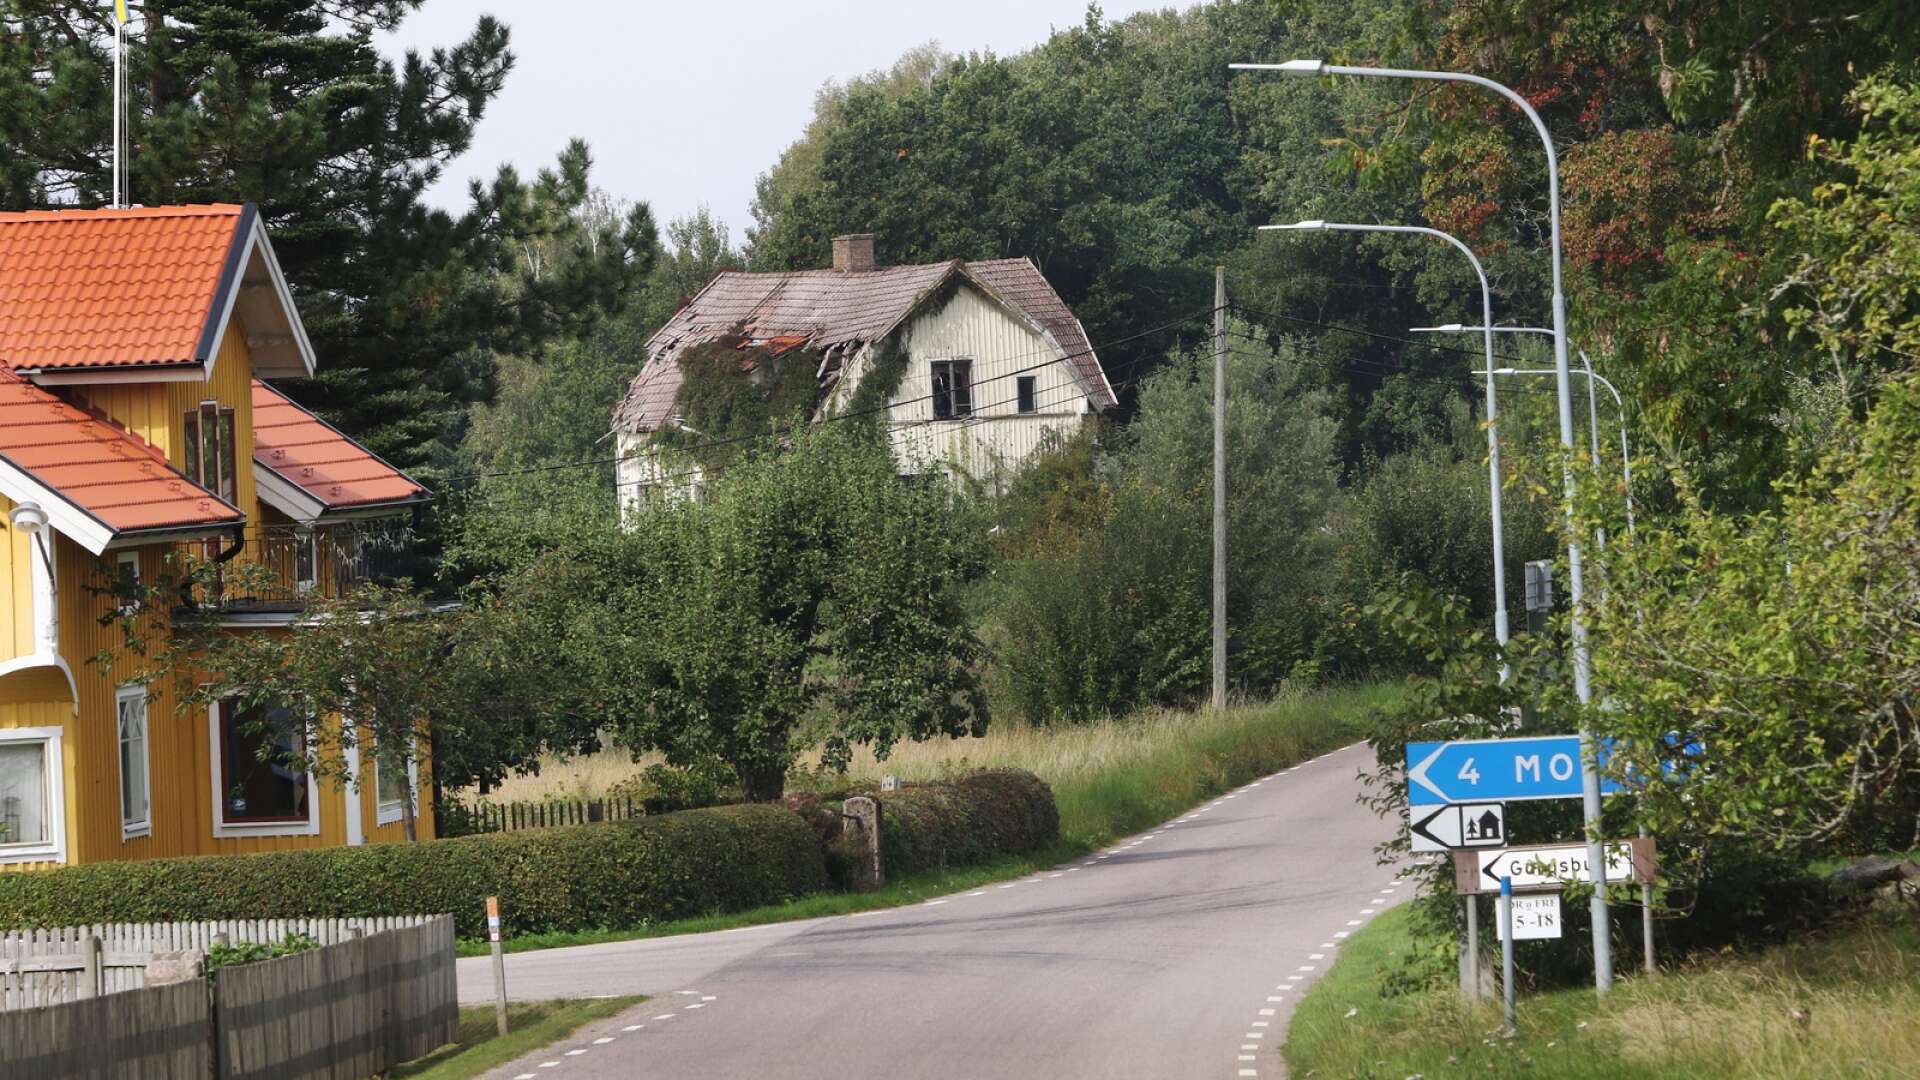 Många invånare i trakten kring Lugnås kyrka är glada att rucklet (det vita huset) kommer att tas bort, men att det ska ersättas av 30 villor och radhus väcker kritik. Det är för stor exploatering, tycker ett 50-tal invånare enligt ett dokument till kommunen.